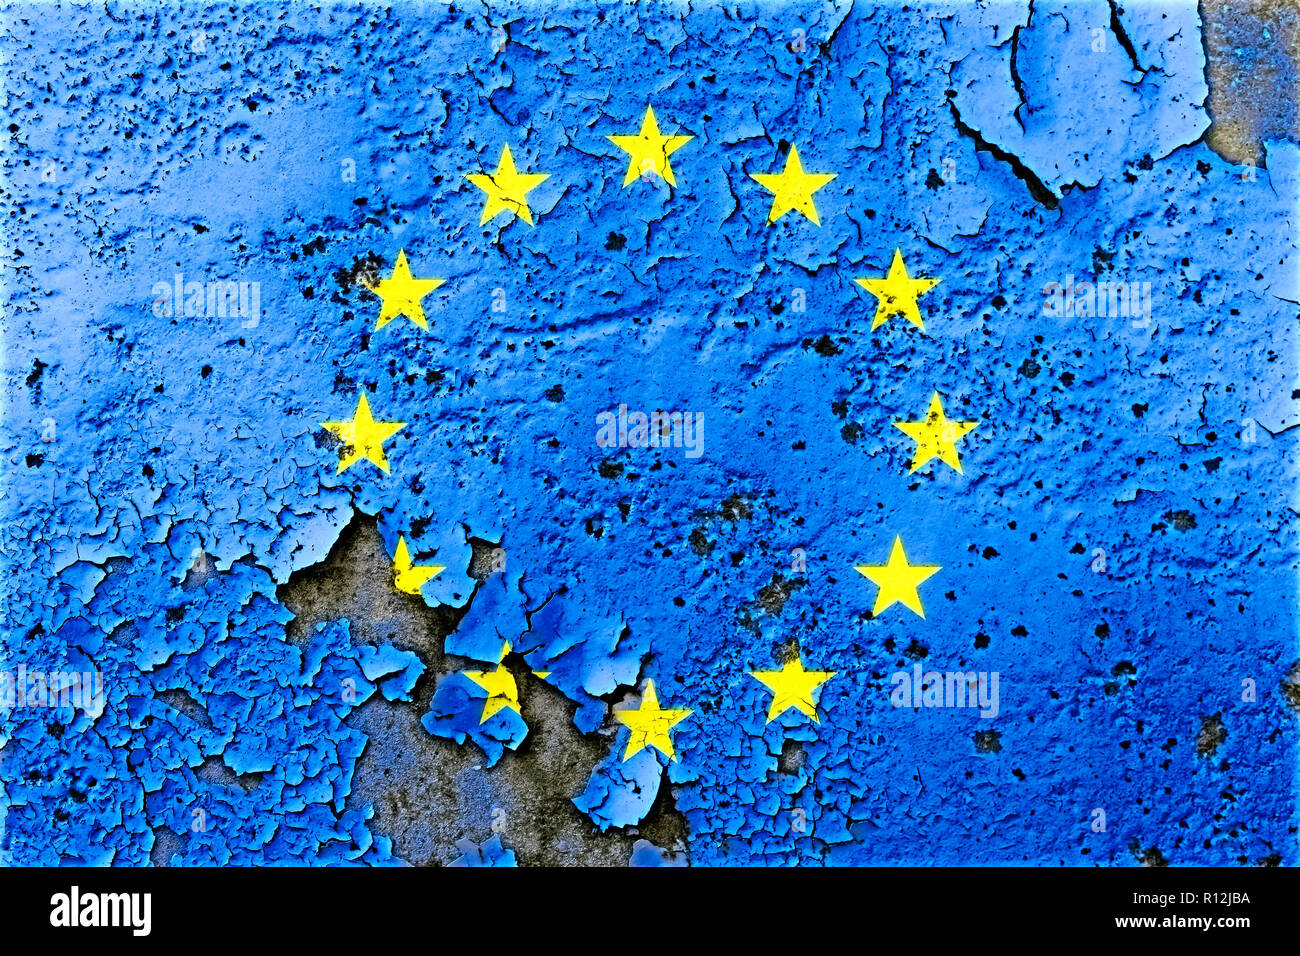 L'Union européenne (UE) drapeau peint sur mur fissuré avec de la peinture. Concept pour les divisions au sein de l'UE, l'Europe de la crise politique et de discussions au sein de t Banque D'Images